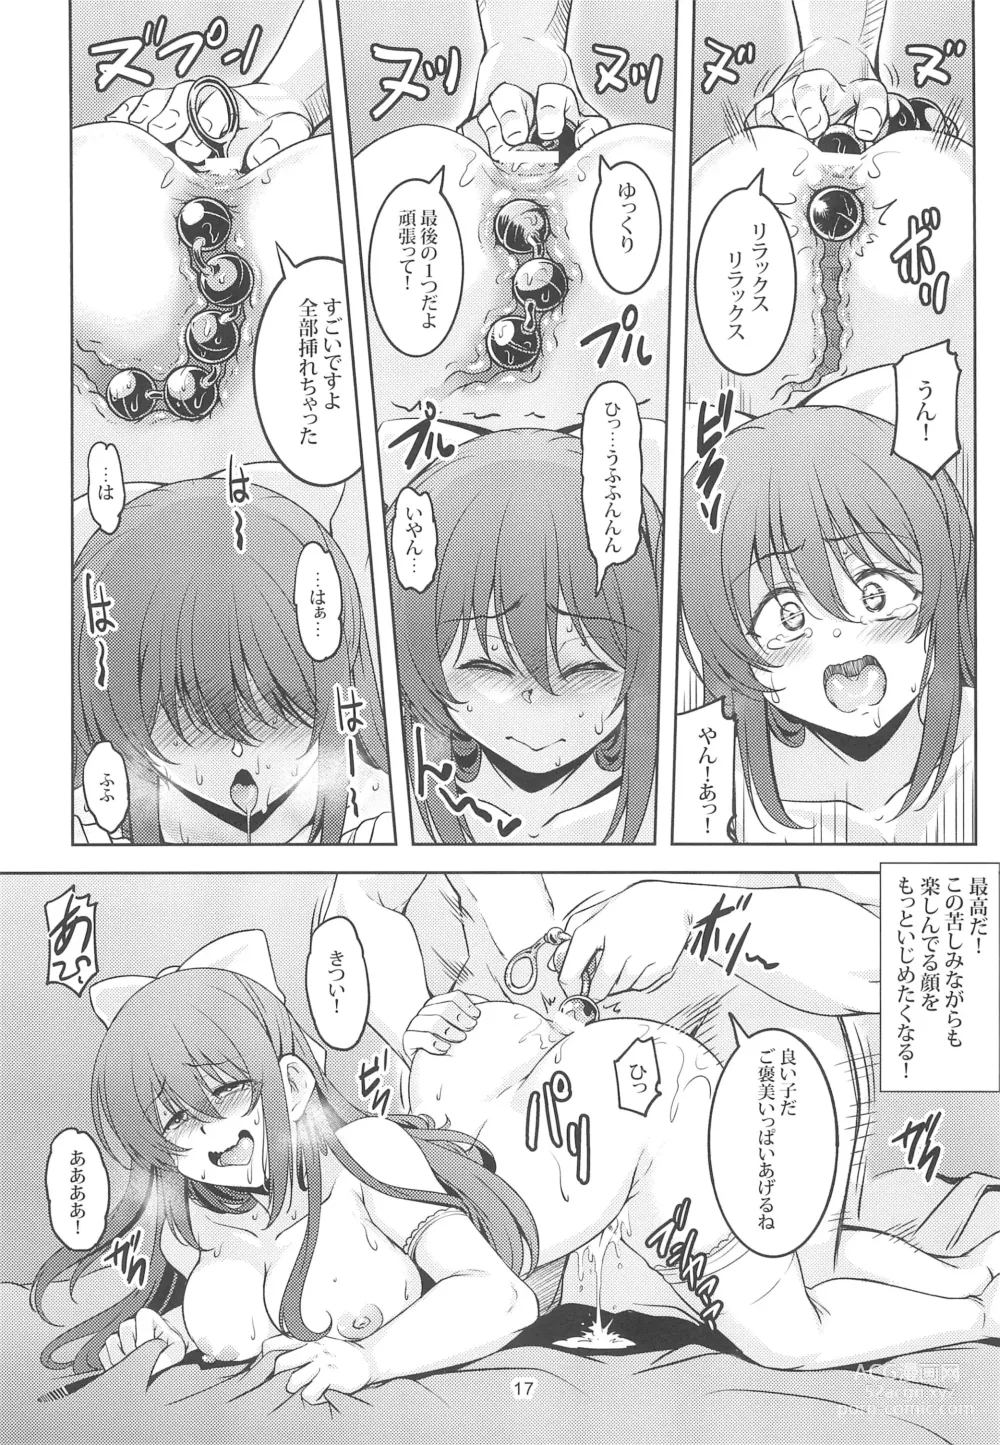 Page 19 of doujinshi Miwaku no Shizuku